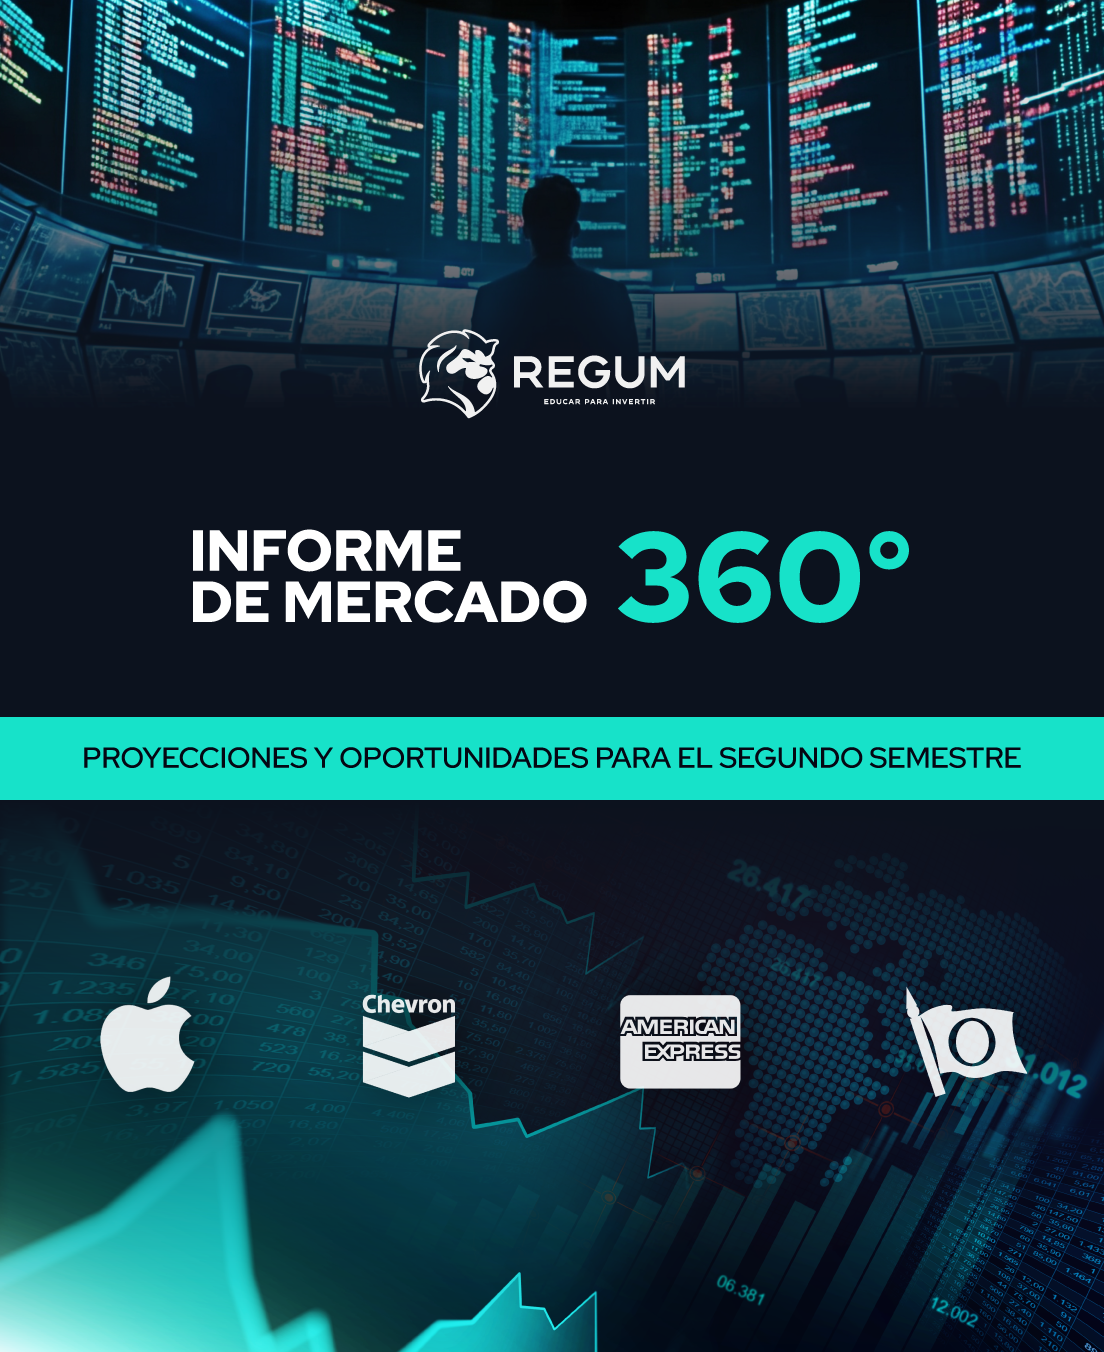 Informe de Mercado 360°